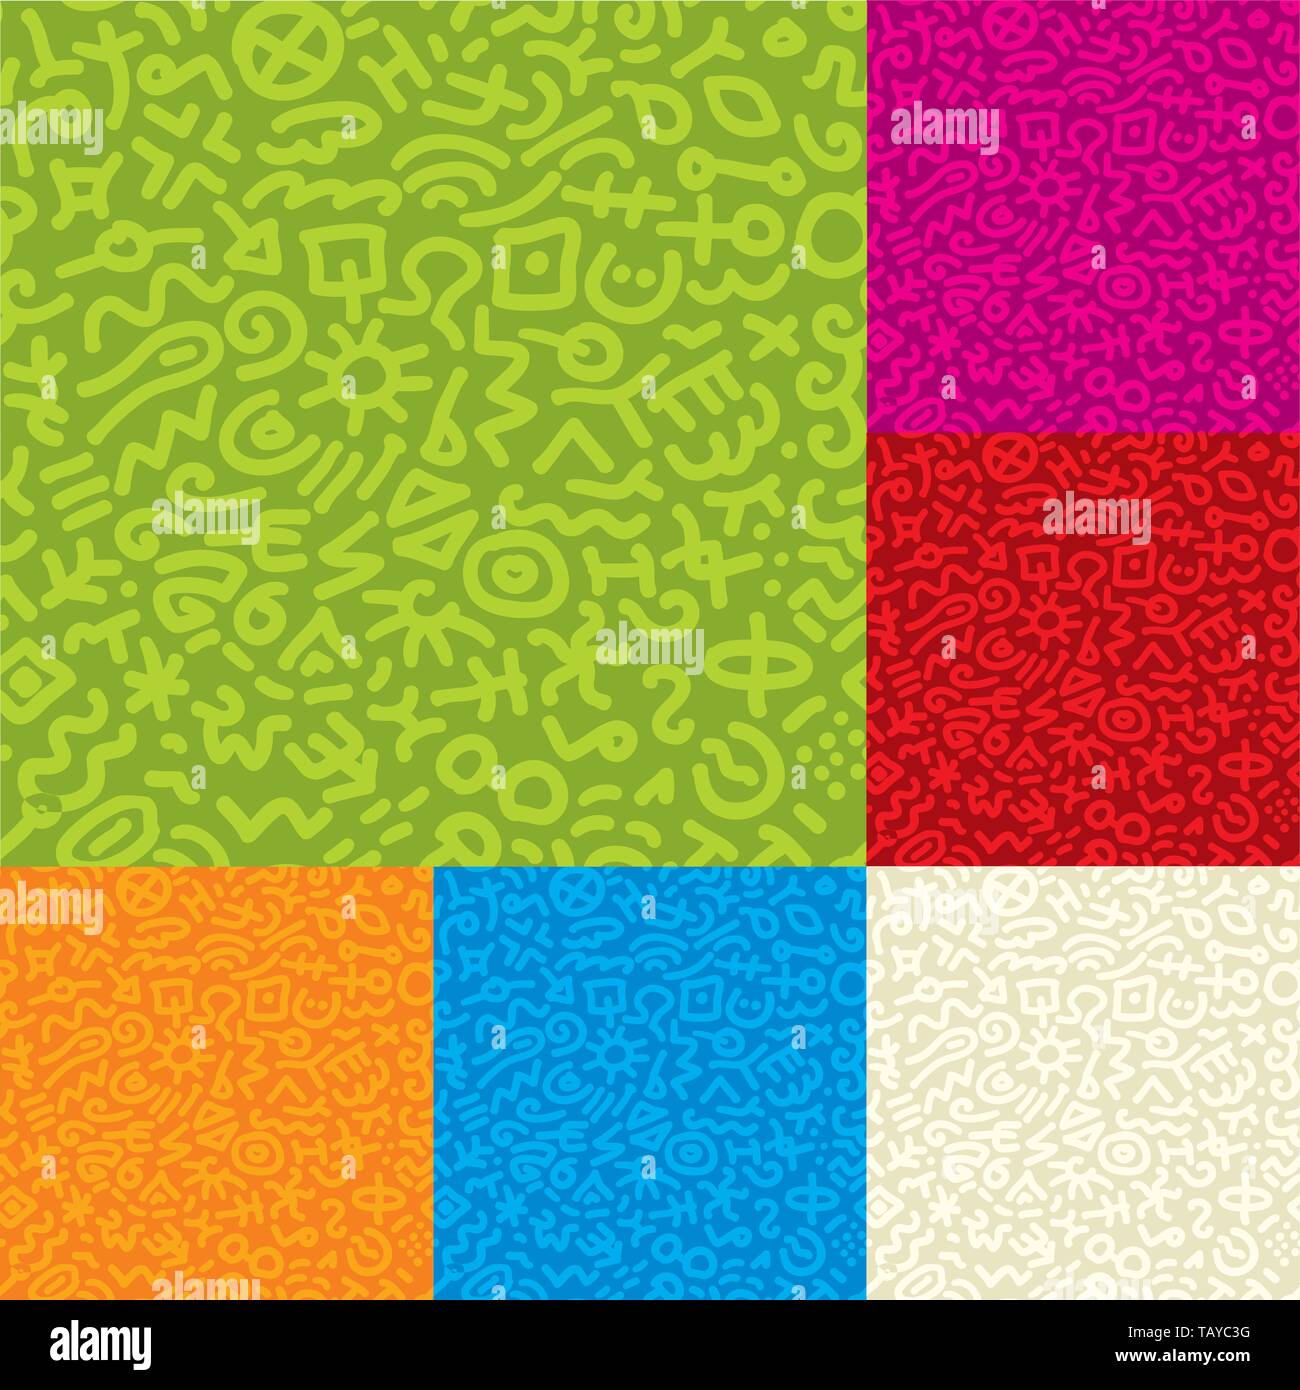 Illustrazione Vettoriale. Lineart seamless texture in vari colori. Illustrazione Vettoriale